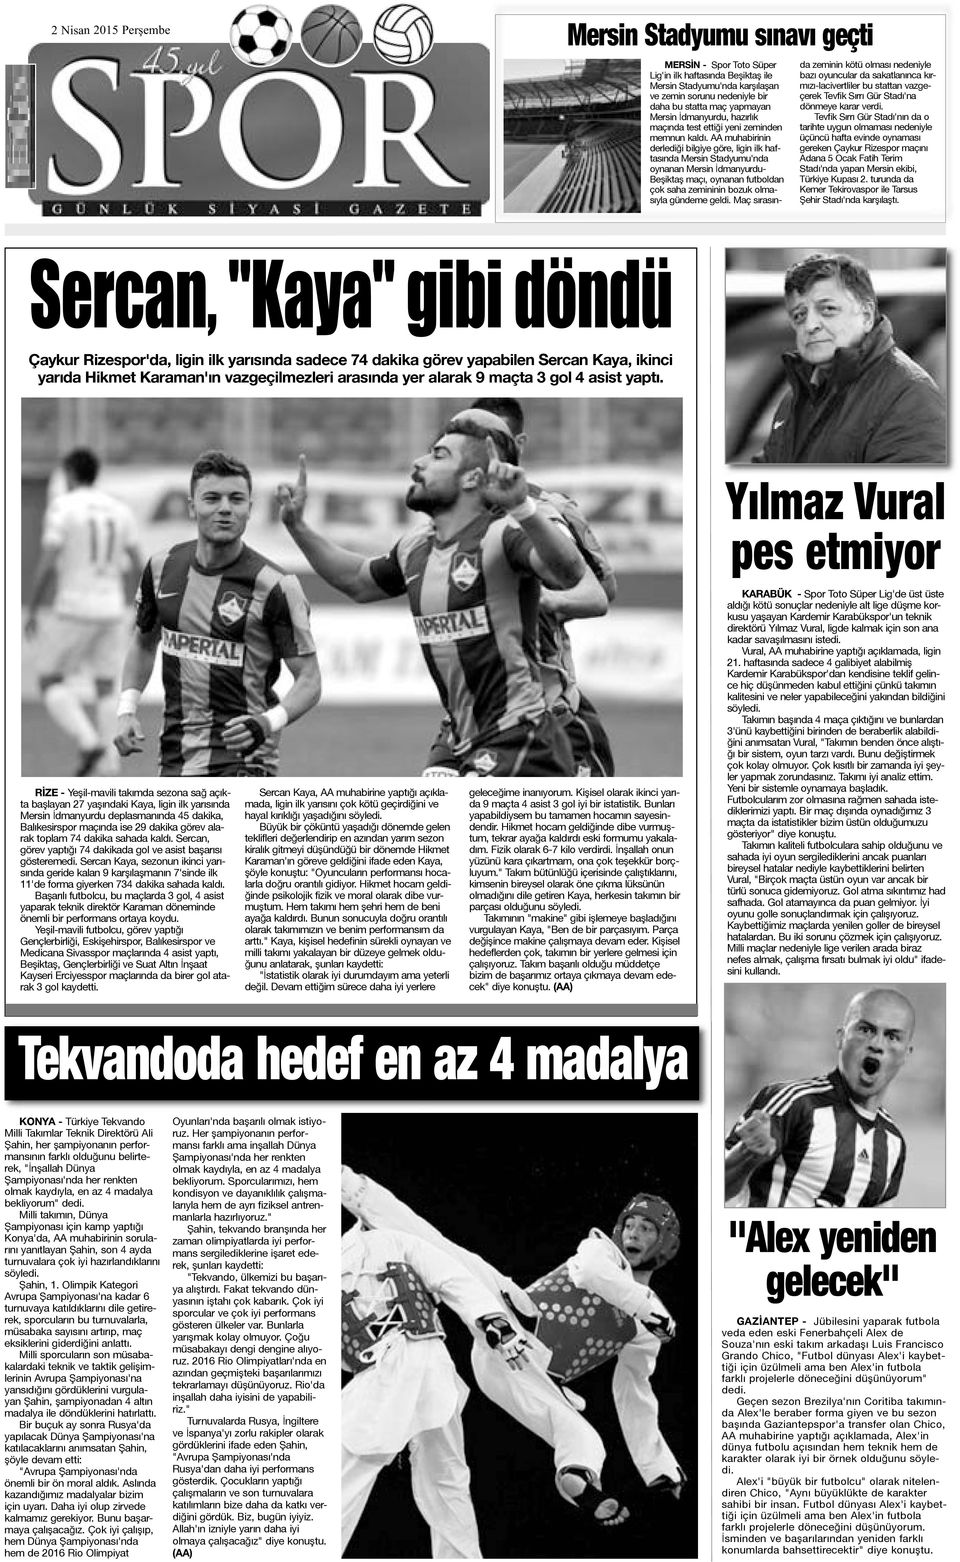 AA muhabirinin derlediği bilgiye göre, ligin ilk haftasında Mersin Stadyumu'nda oynanan Mersin İdmanyurdu- Beşiktaş maçı, oynanan futboldan çok saha zemininin bozuk olmasıyla gündeme geldi.